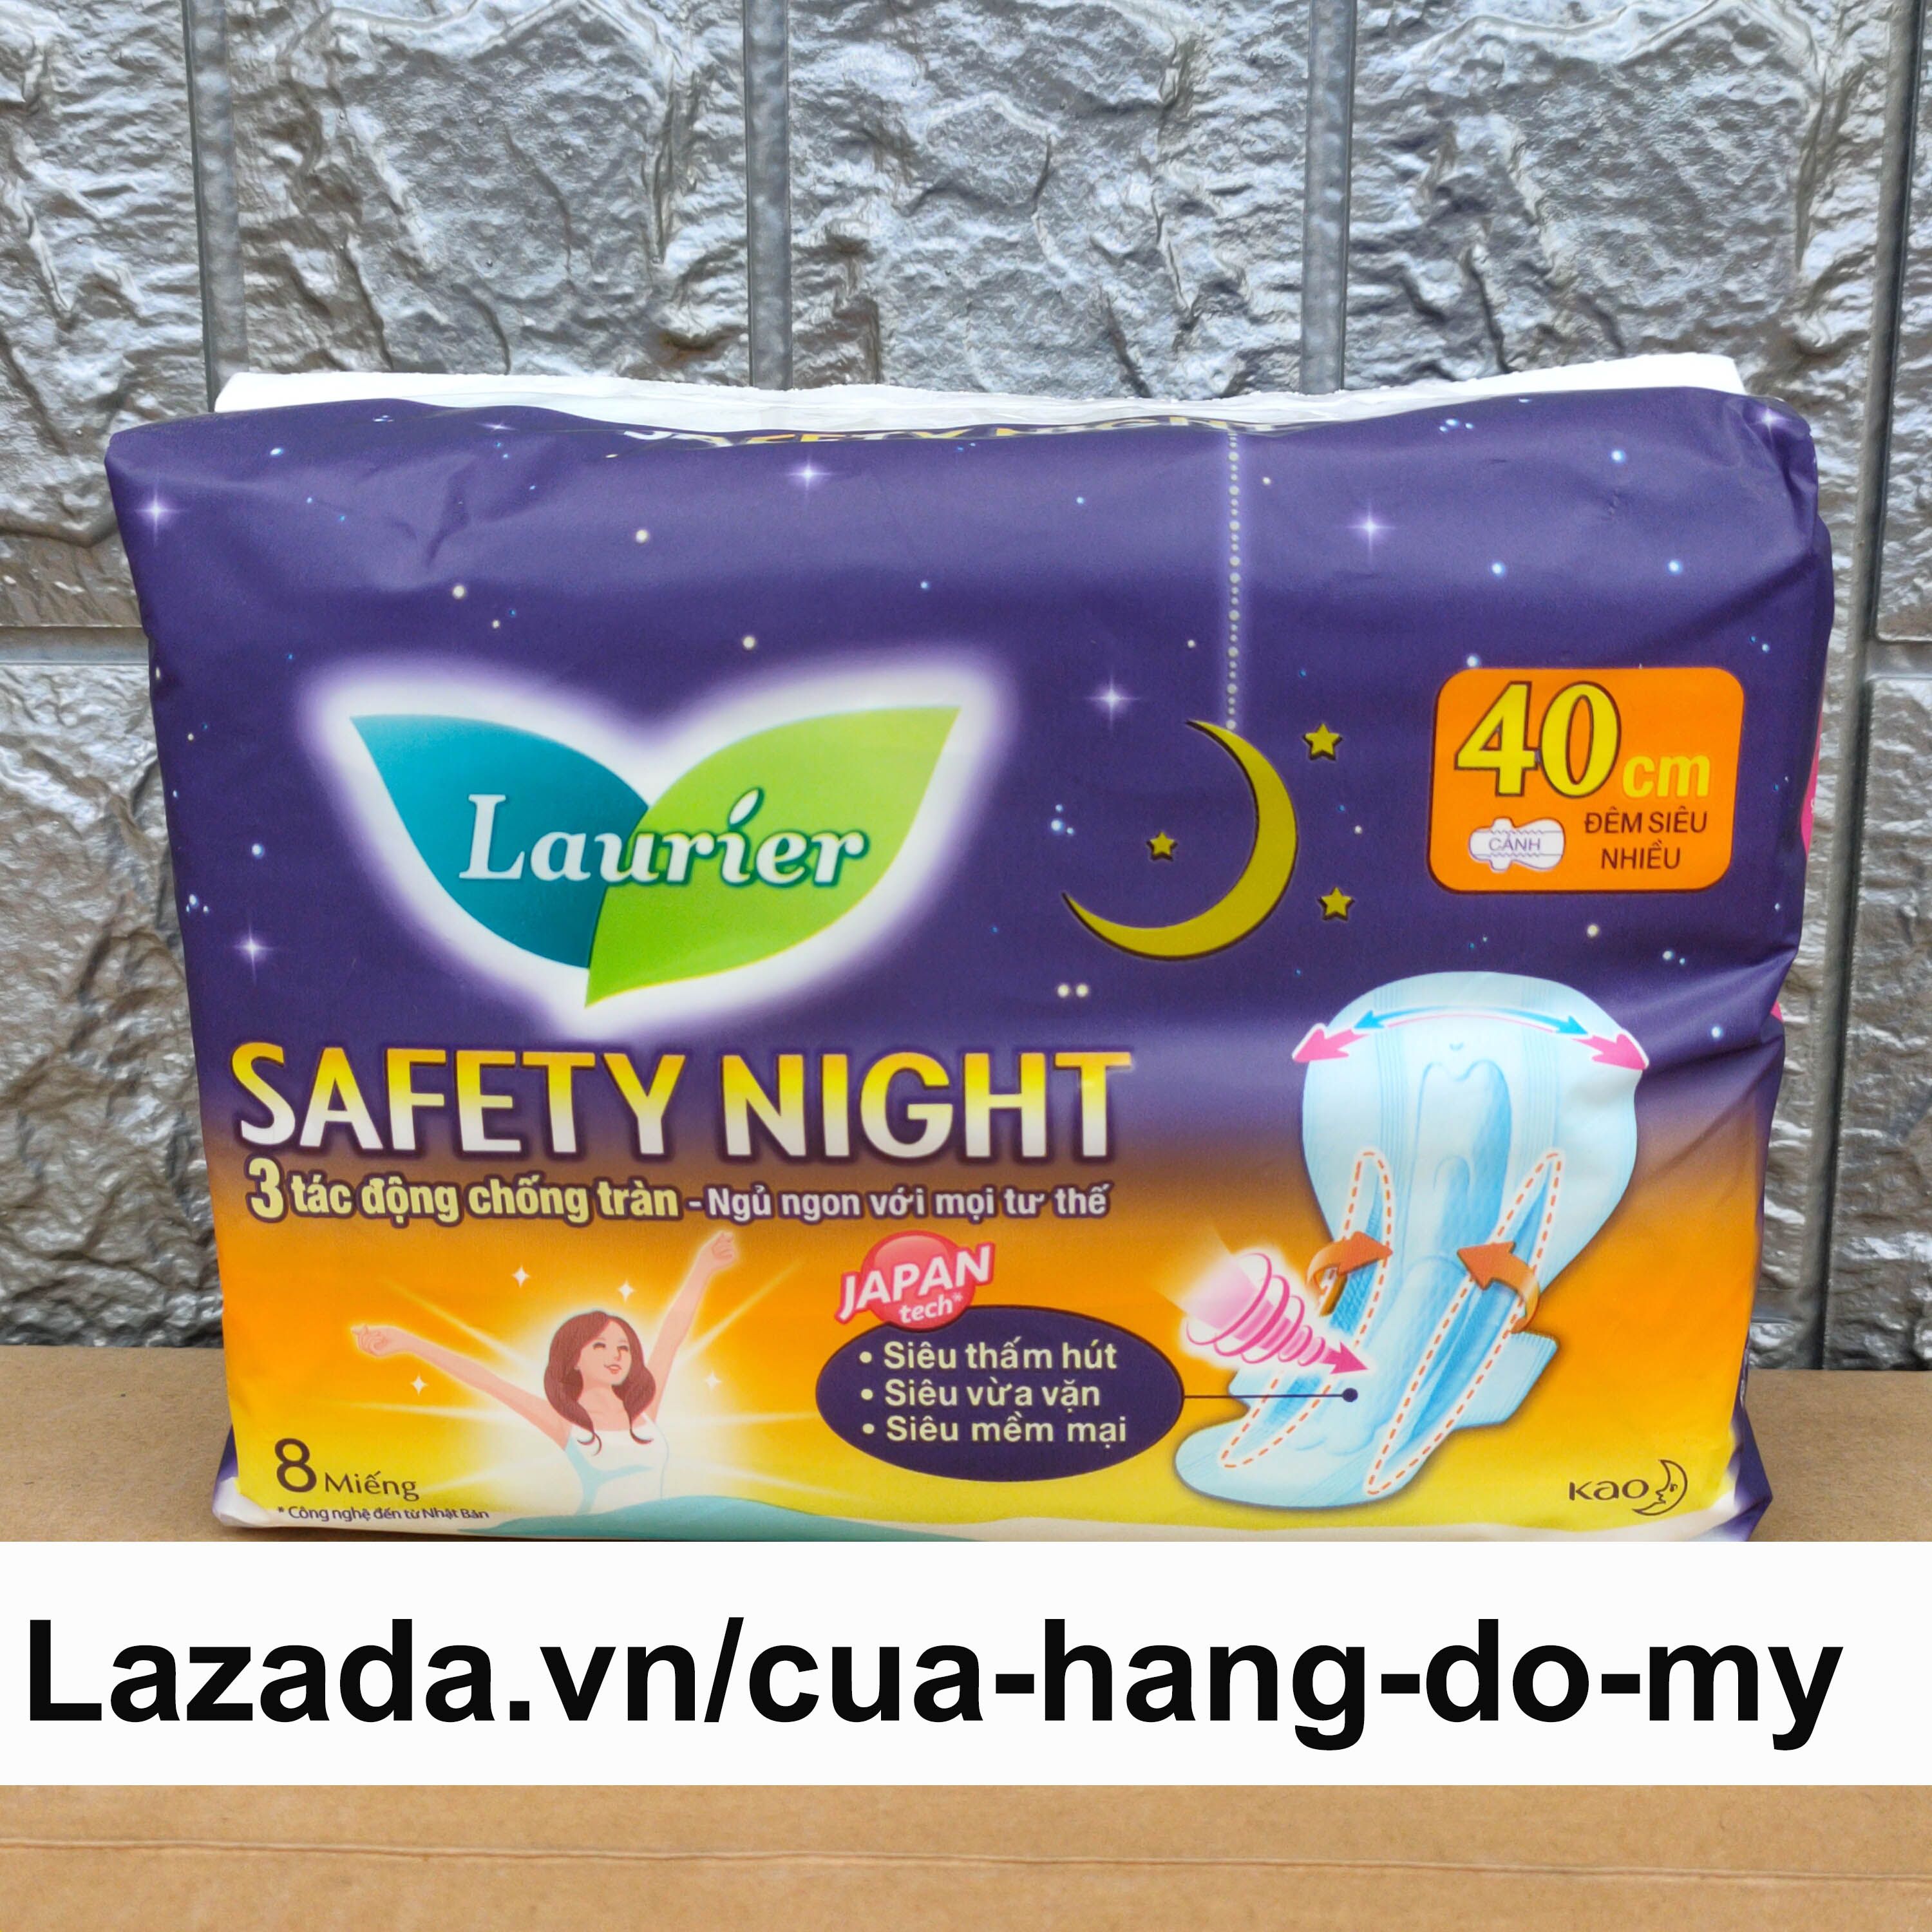 Băng vệ sinh ban đêm Laurier Safety Night siêu an toàn 40cm 8 miếng dành